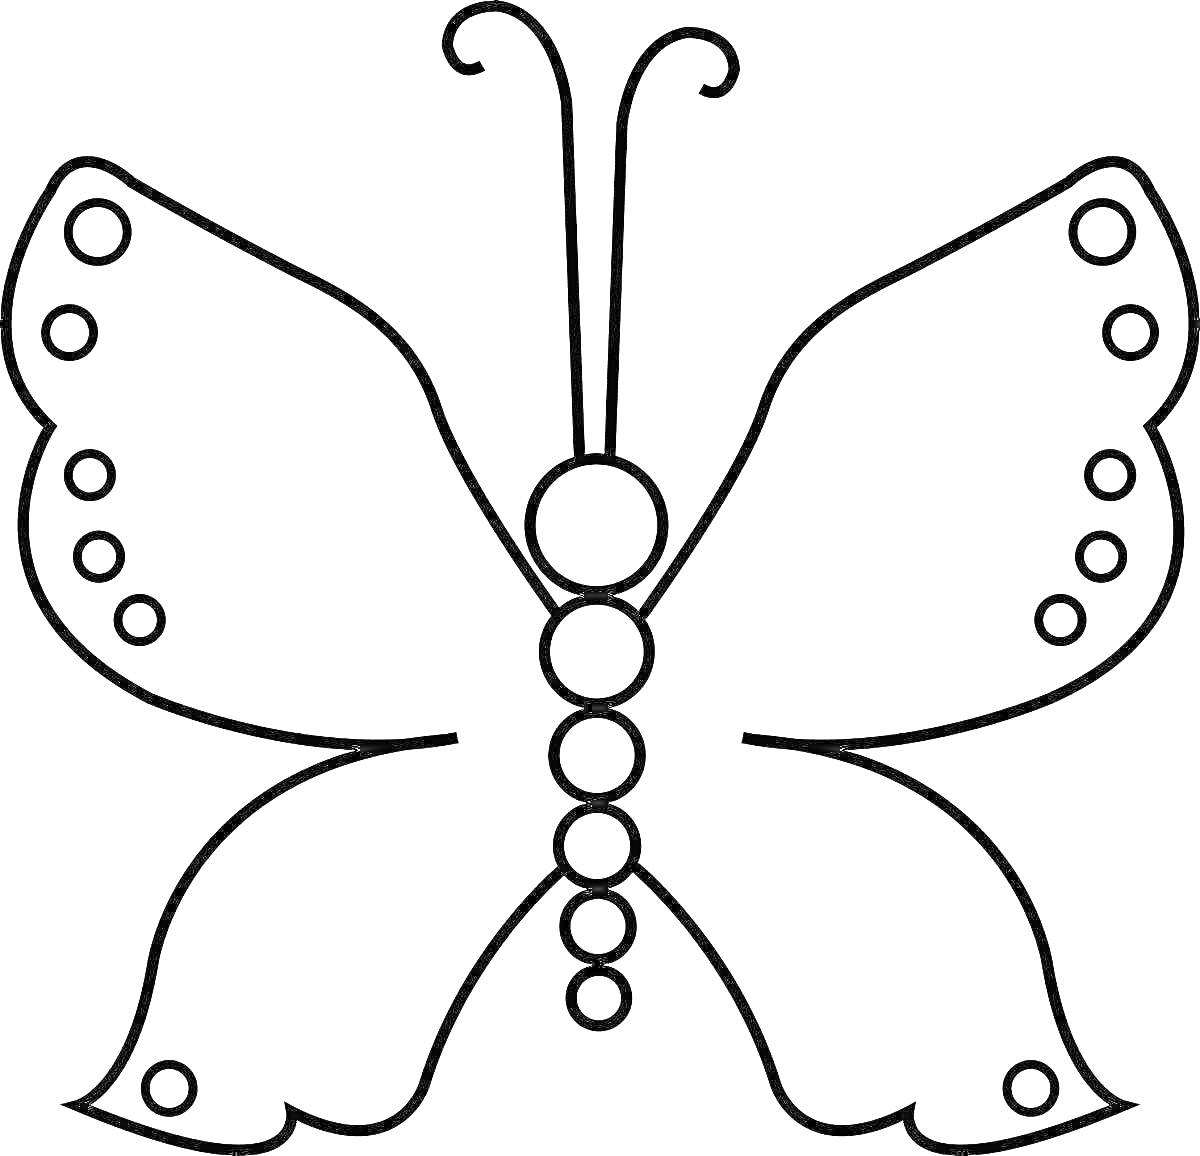 Раскраска Раскраска с контуром бабочки, состоящей из четырех симметричных крыльев с круглыми украшениями и телом, состоящим из пяти кругов, с двумя усиками.